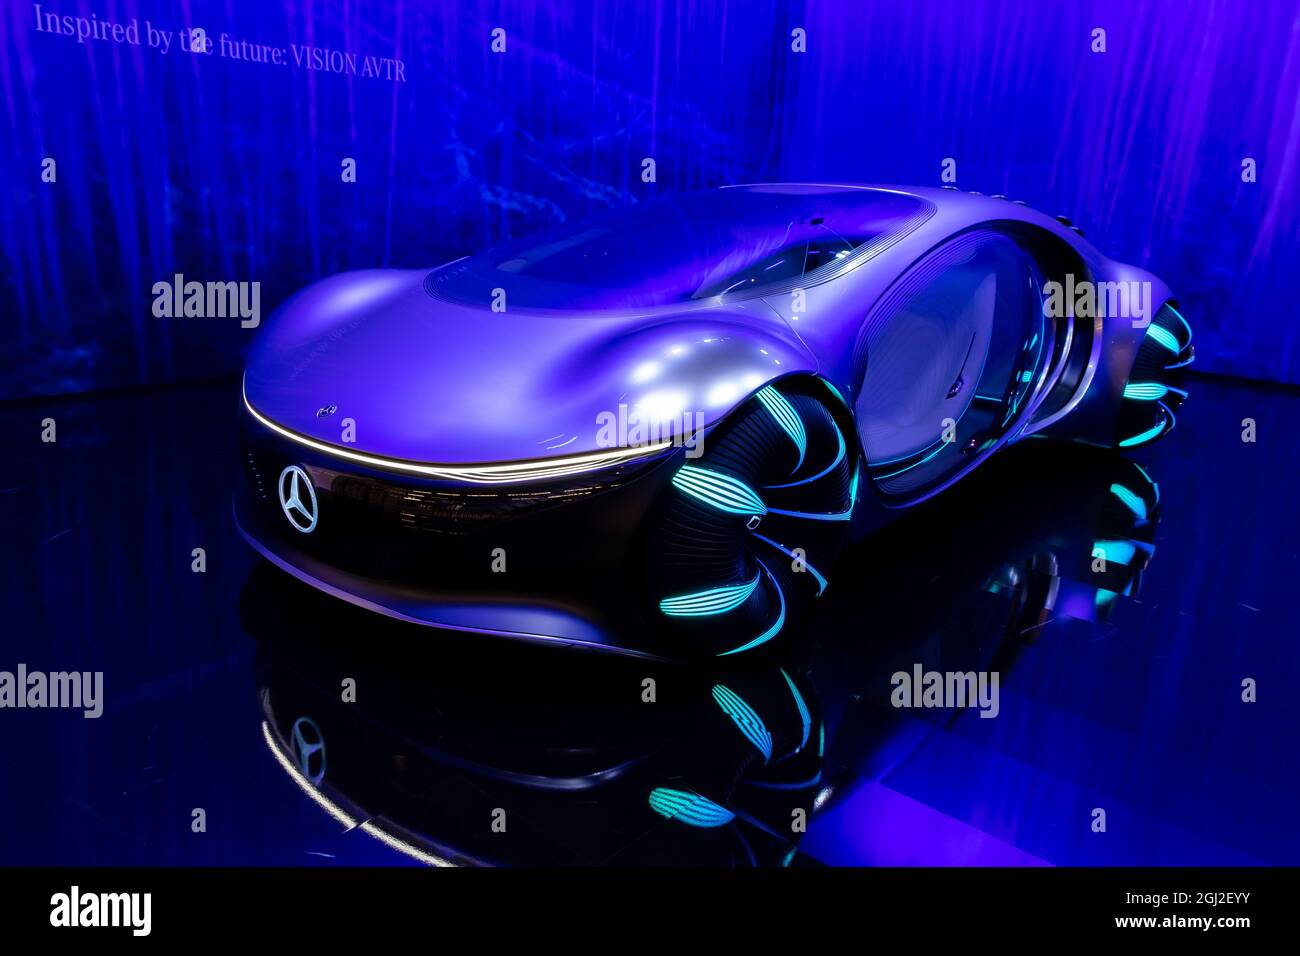 Mercedes-Benz Vision AVTR Concepto inteligente e intuitivo, leyendo su mente mientras conduce, presentado en la feria IAA Mobility 2021 en Munich, Germa Foto de stock